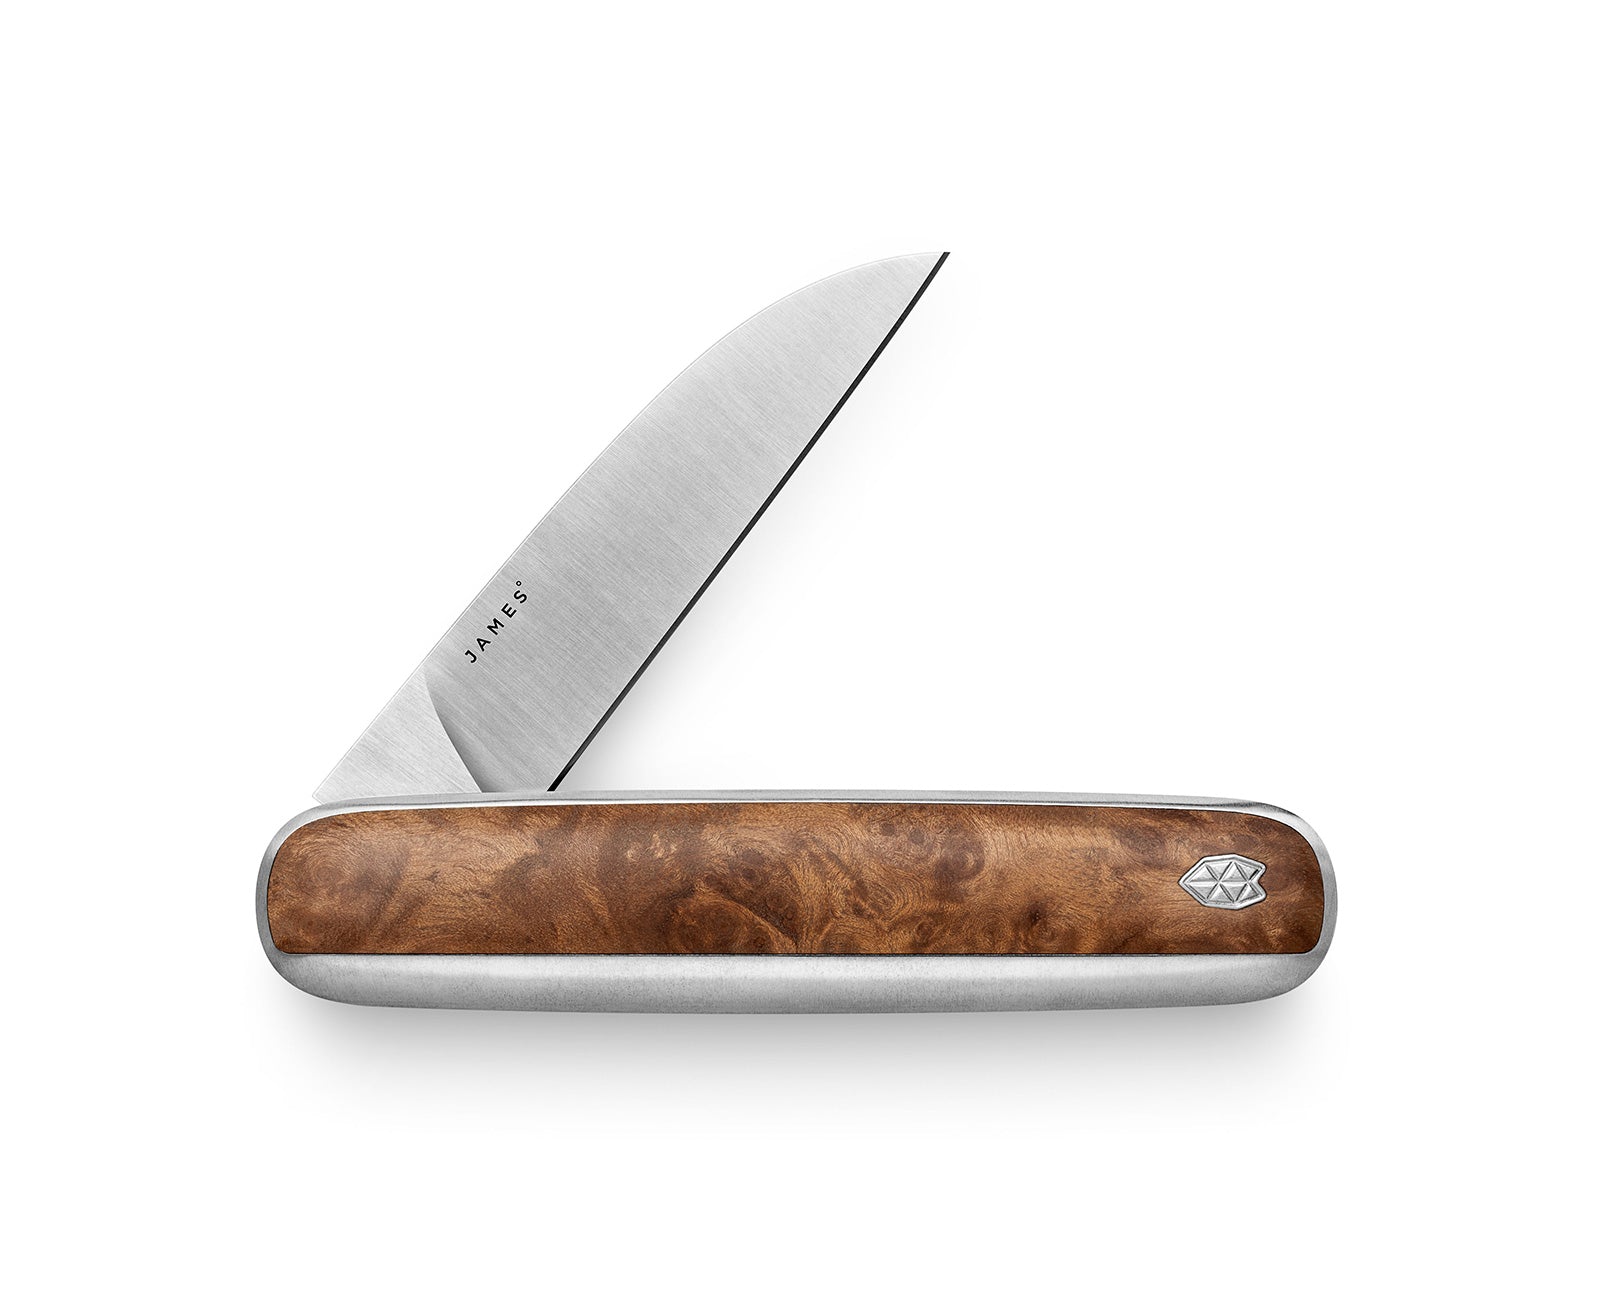 Jack Knife, Slim, one-handed, wooden handle